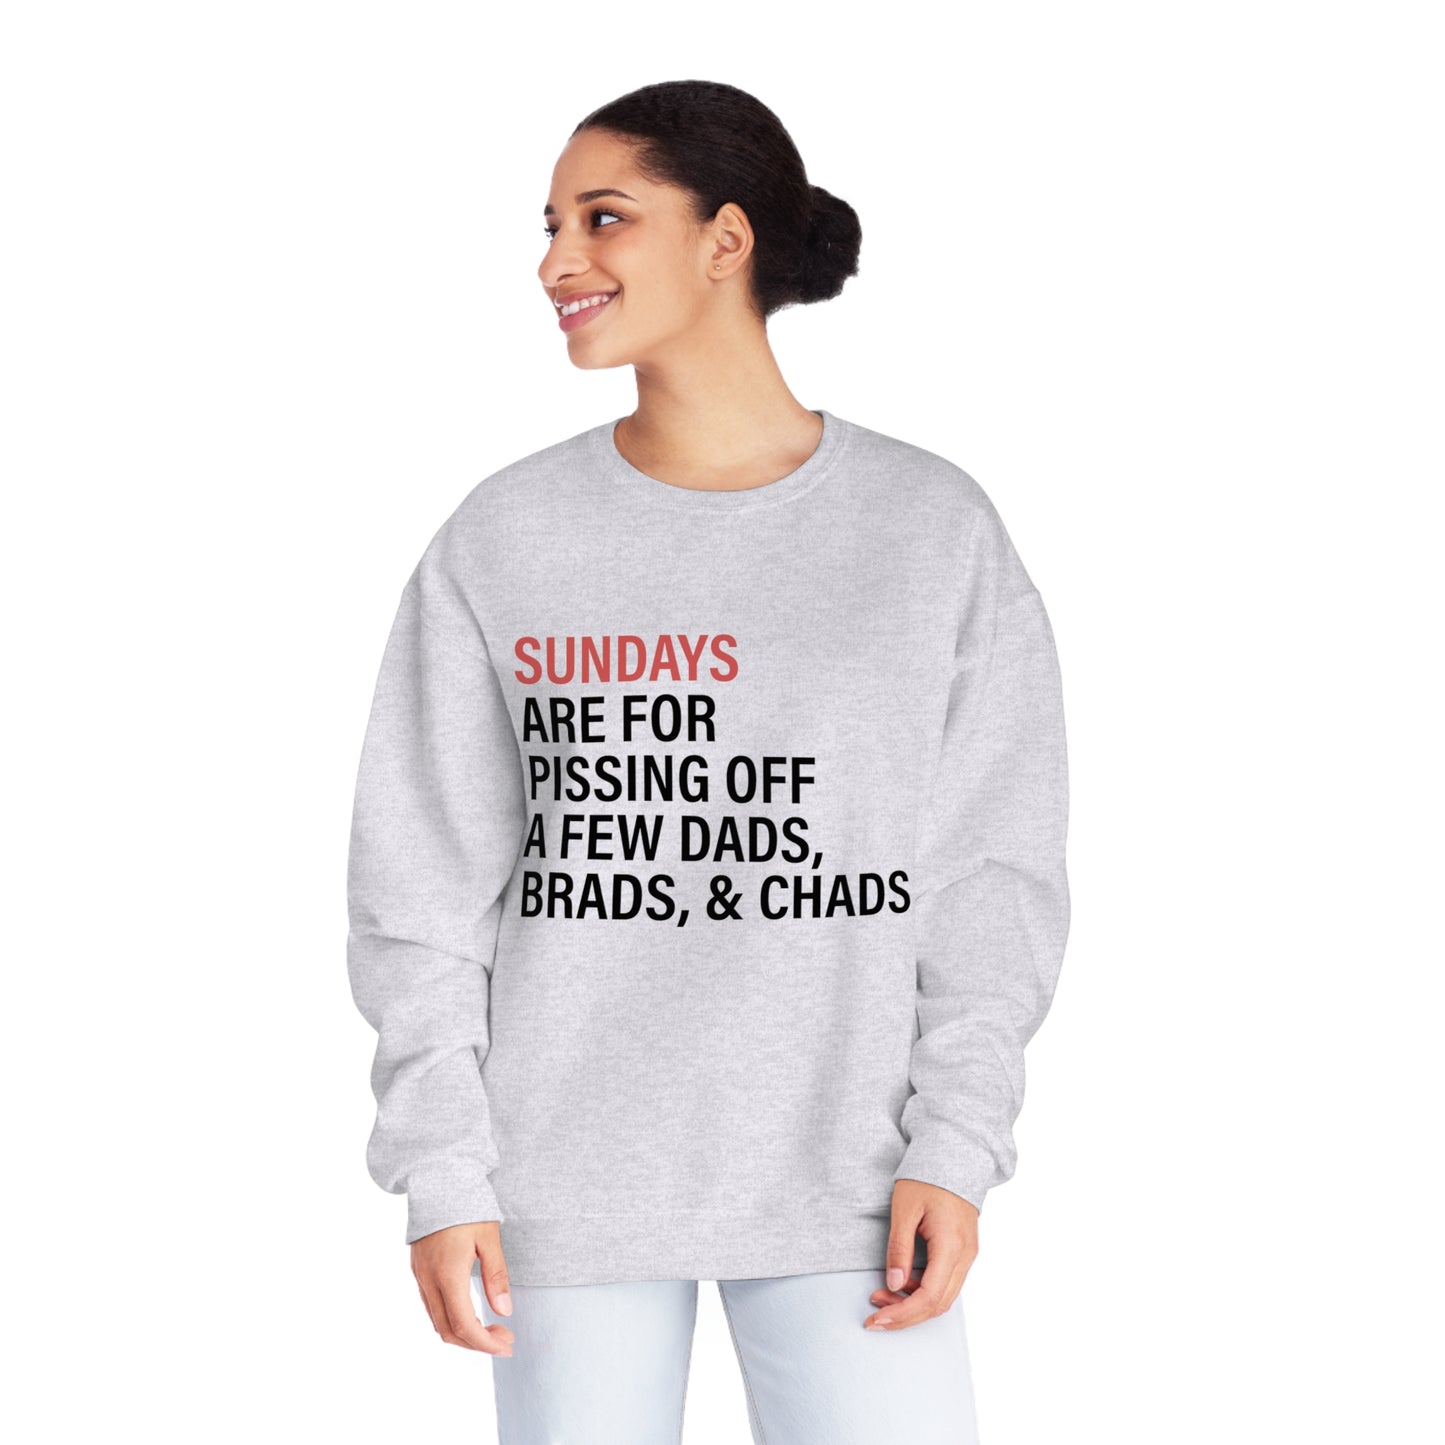 Sundays - Dads, Brads & Chads  - Unisex NuBlend® Crewneck Sweatshirt